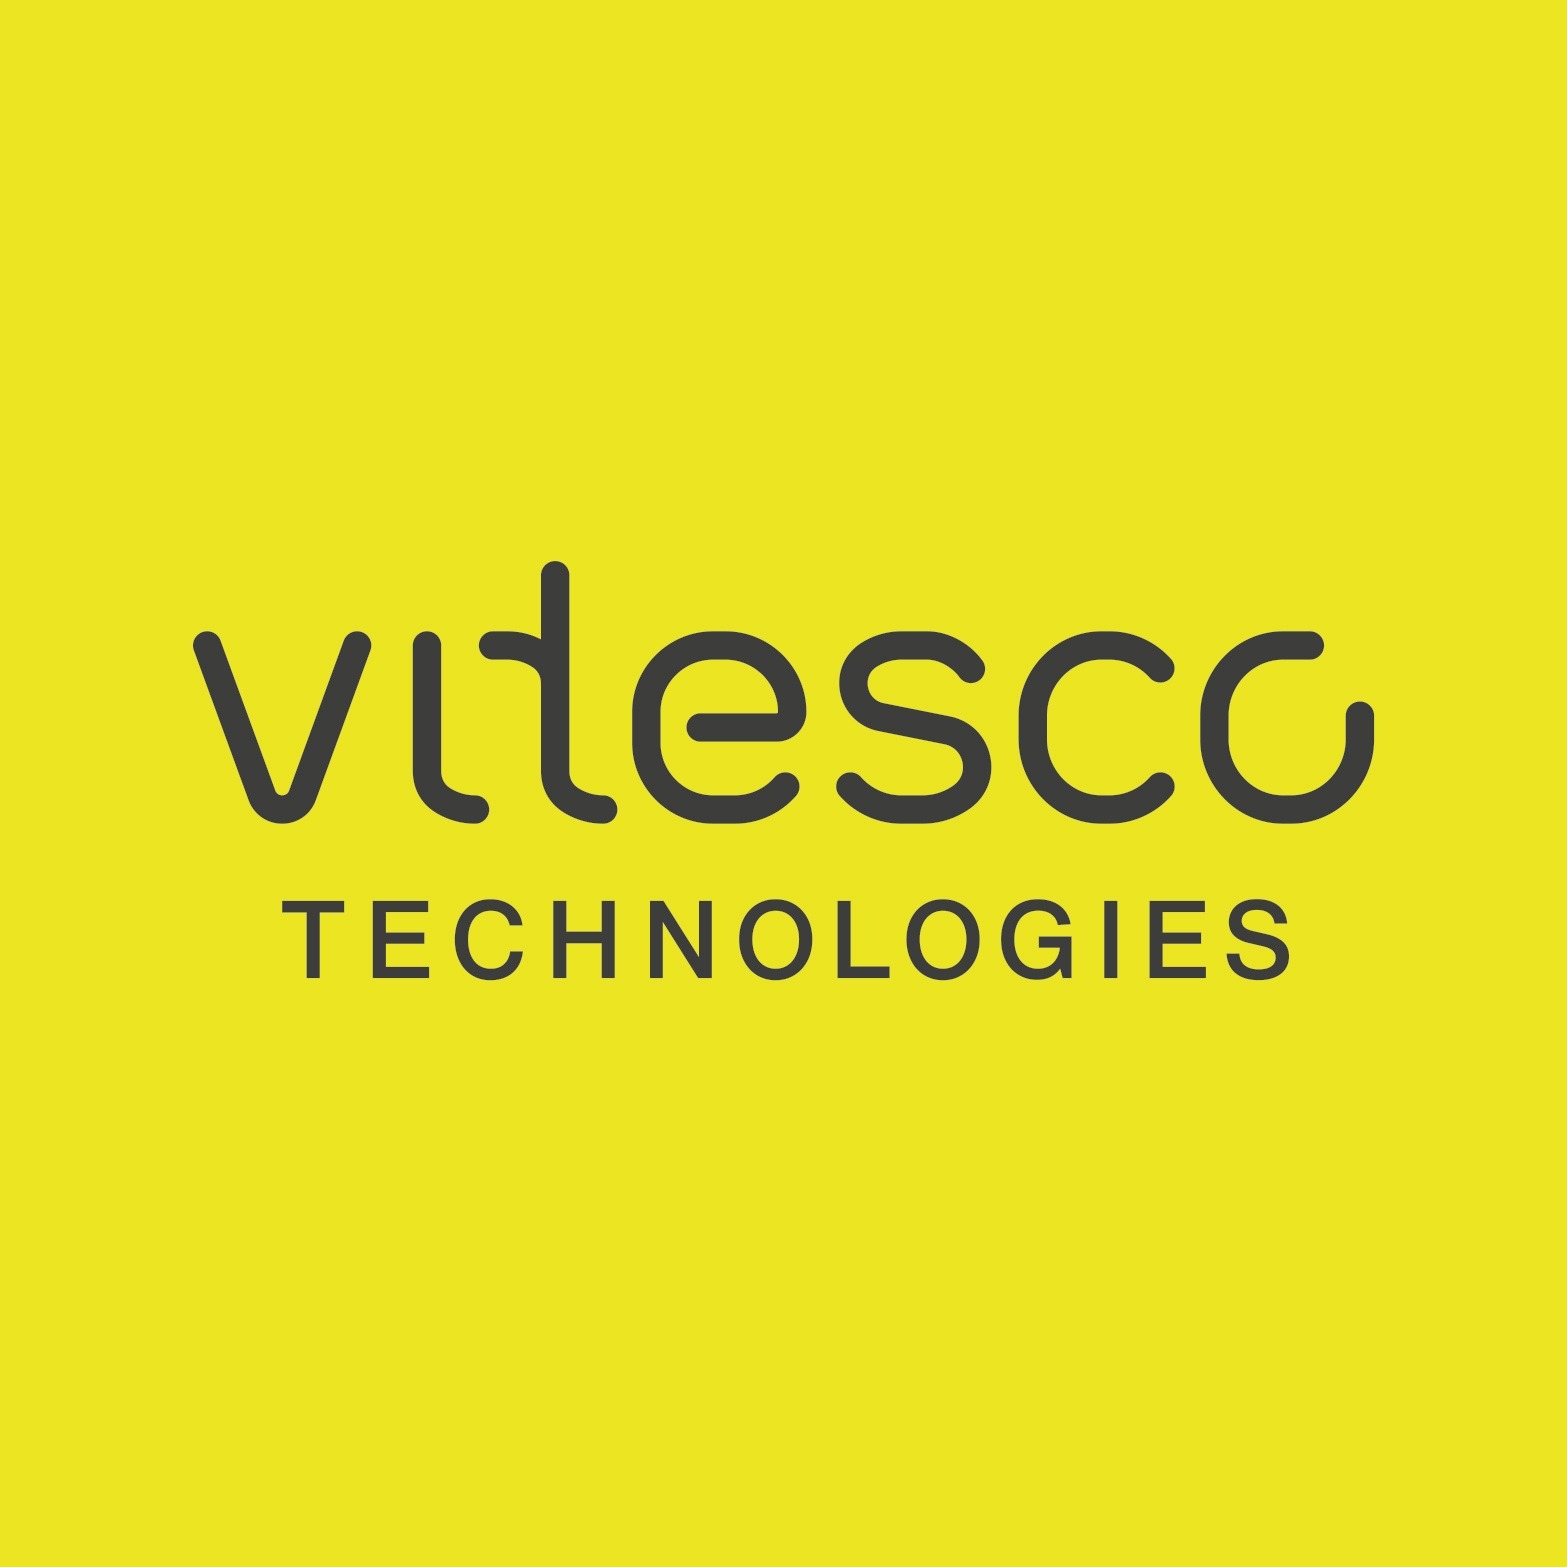 Vitesco Technologies in Nürnberg - Logo